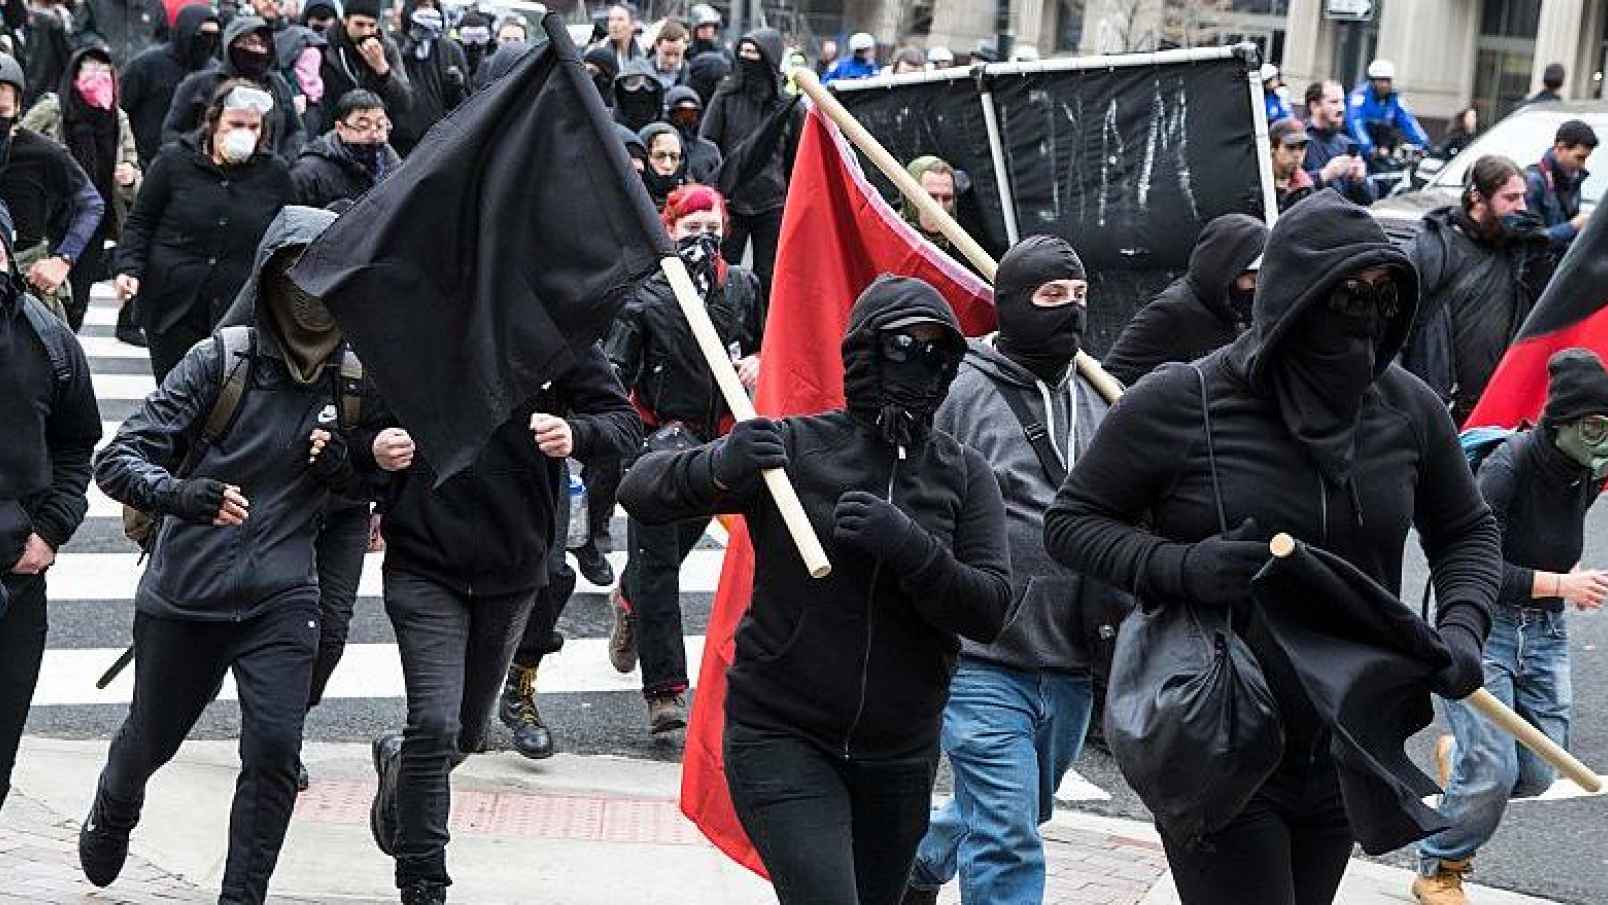 Narcotráfico se mueve entre manifestaciones Antifa en EE.UU., dice informe federal